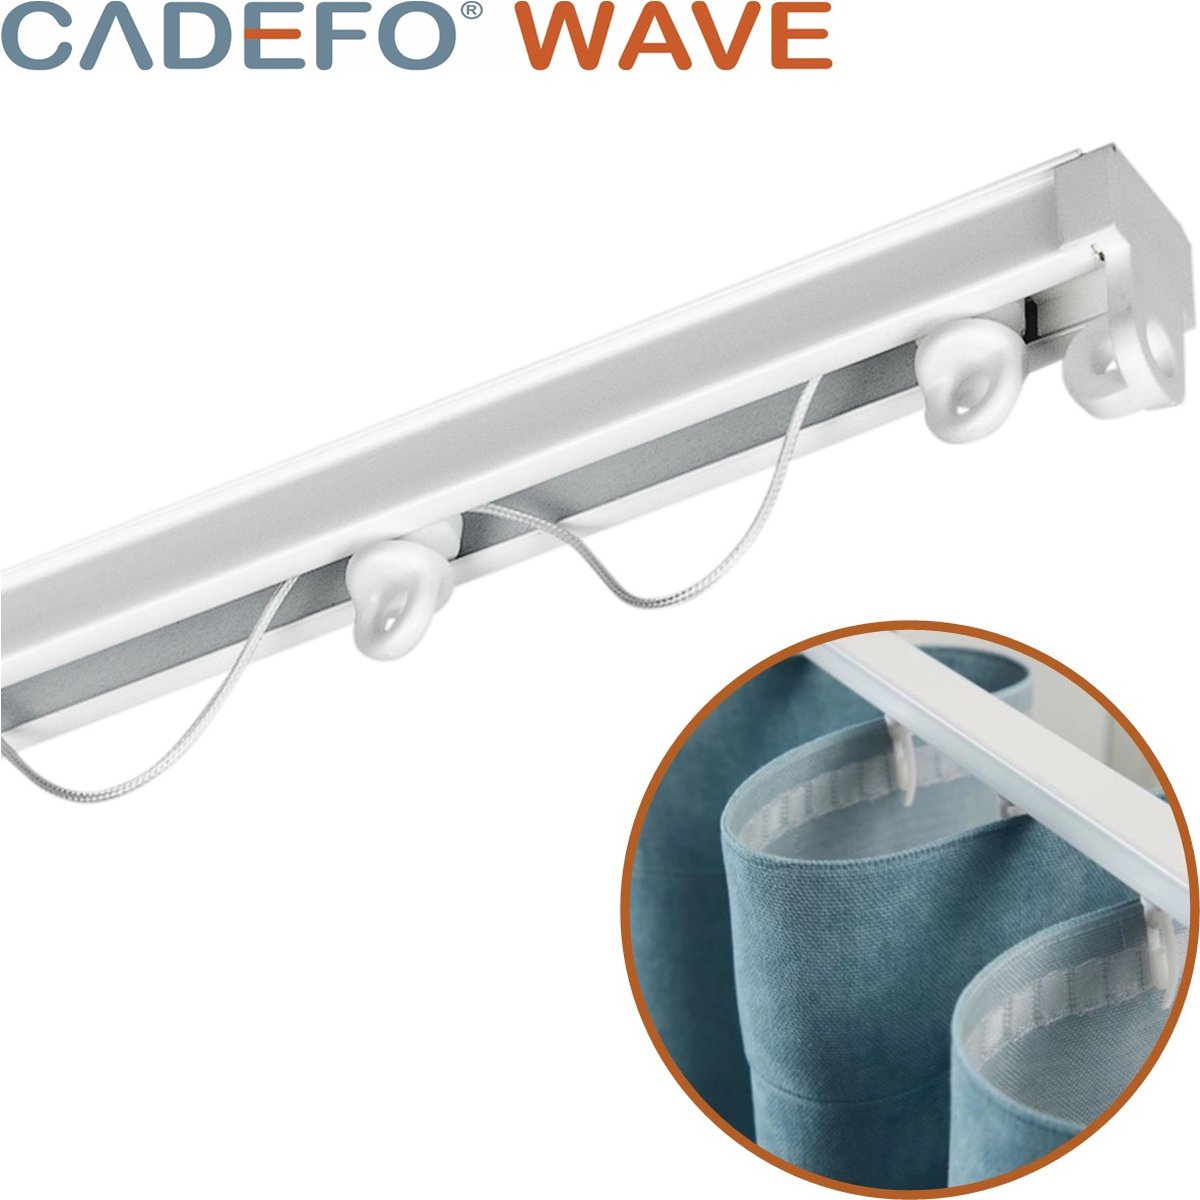 CADEFO WAVE (451 - 500 cm) Gordijnrails - Compleet op maat! - UIT 1 STUK - Leverbaar tot 6 meter - Plafondbevestiging - Lengte 481 cm